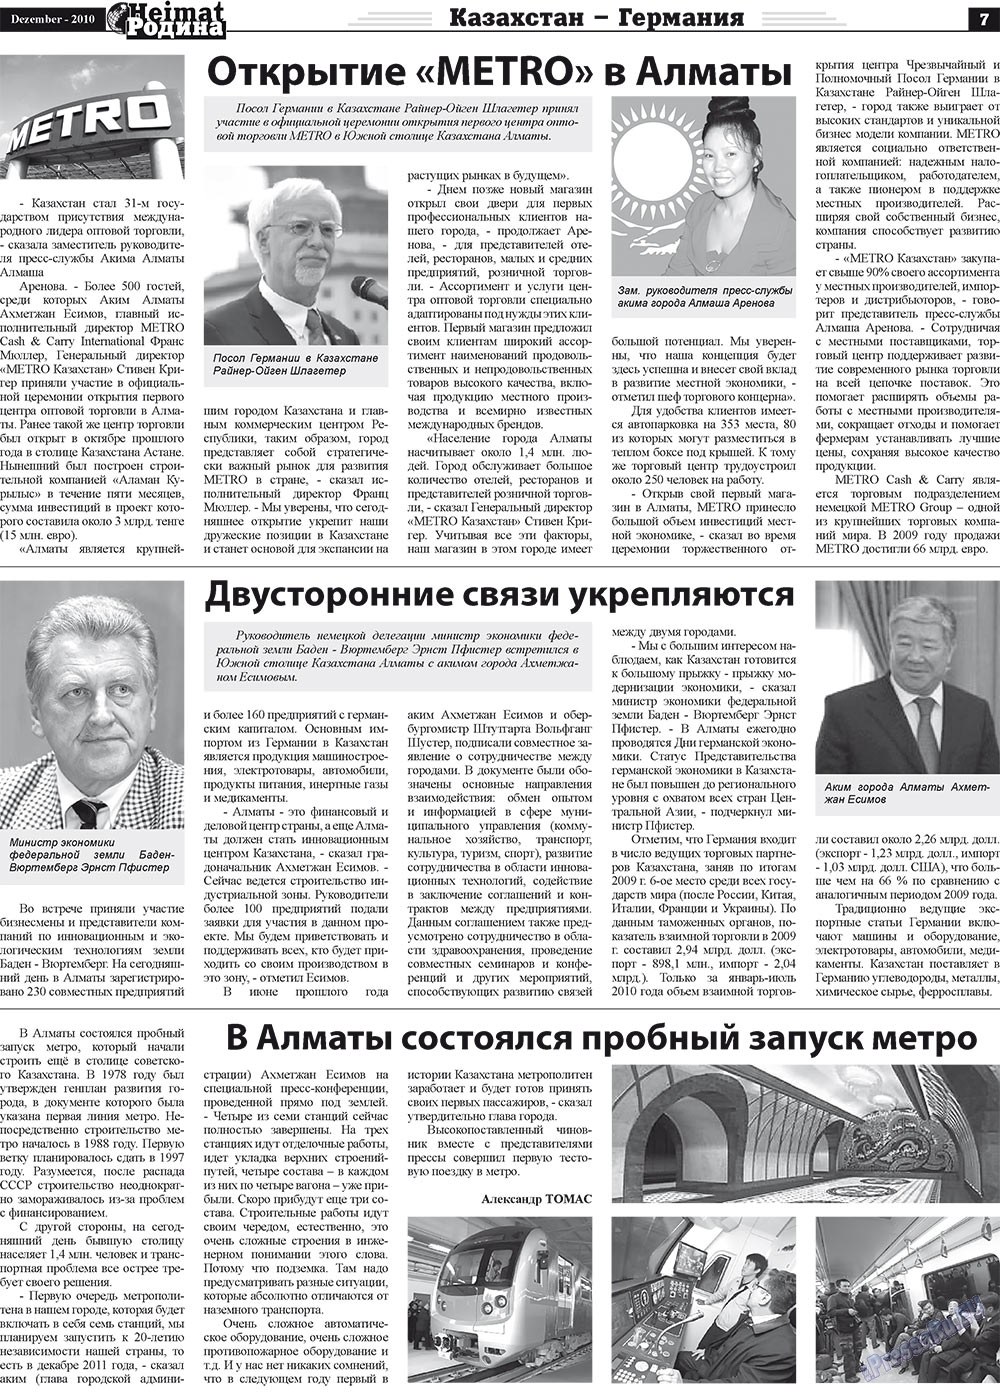 Heimat-Родина (газета). 2010 год, номер 12, стр. 7